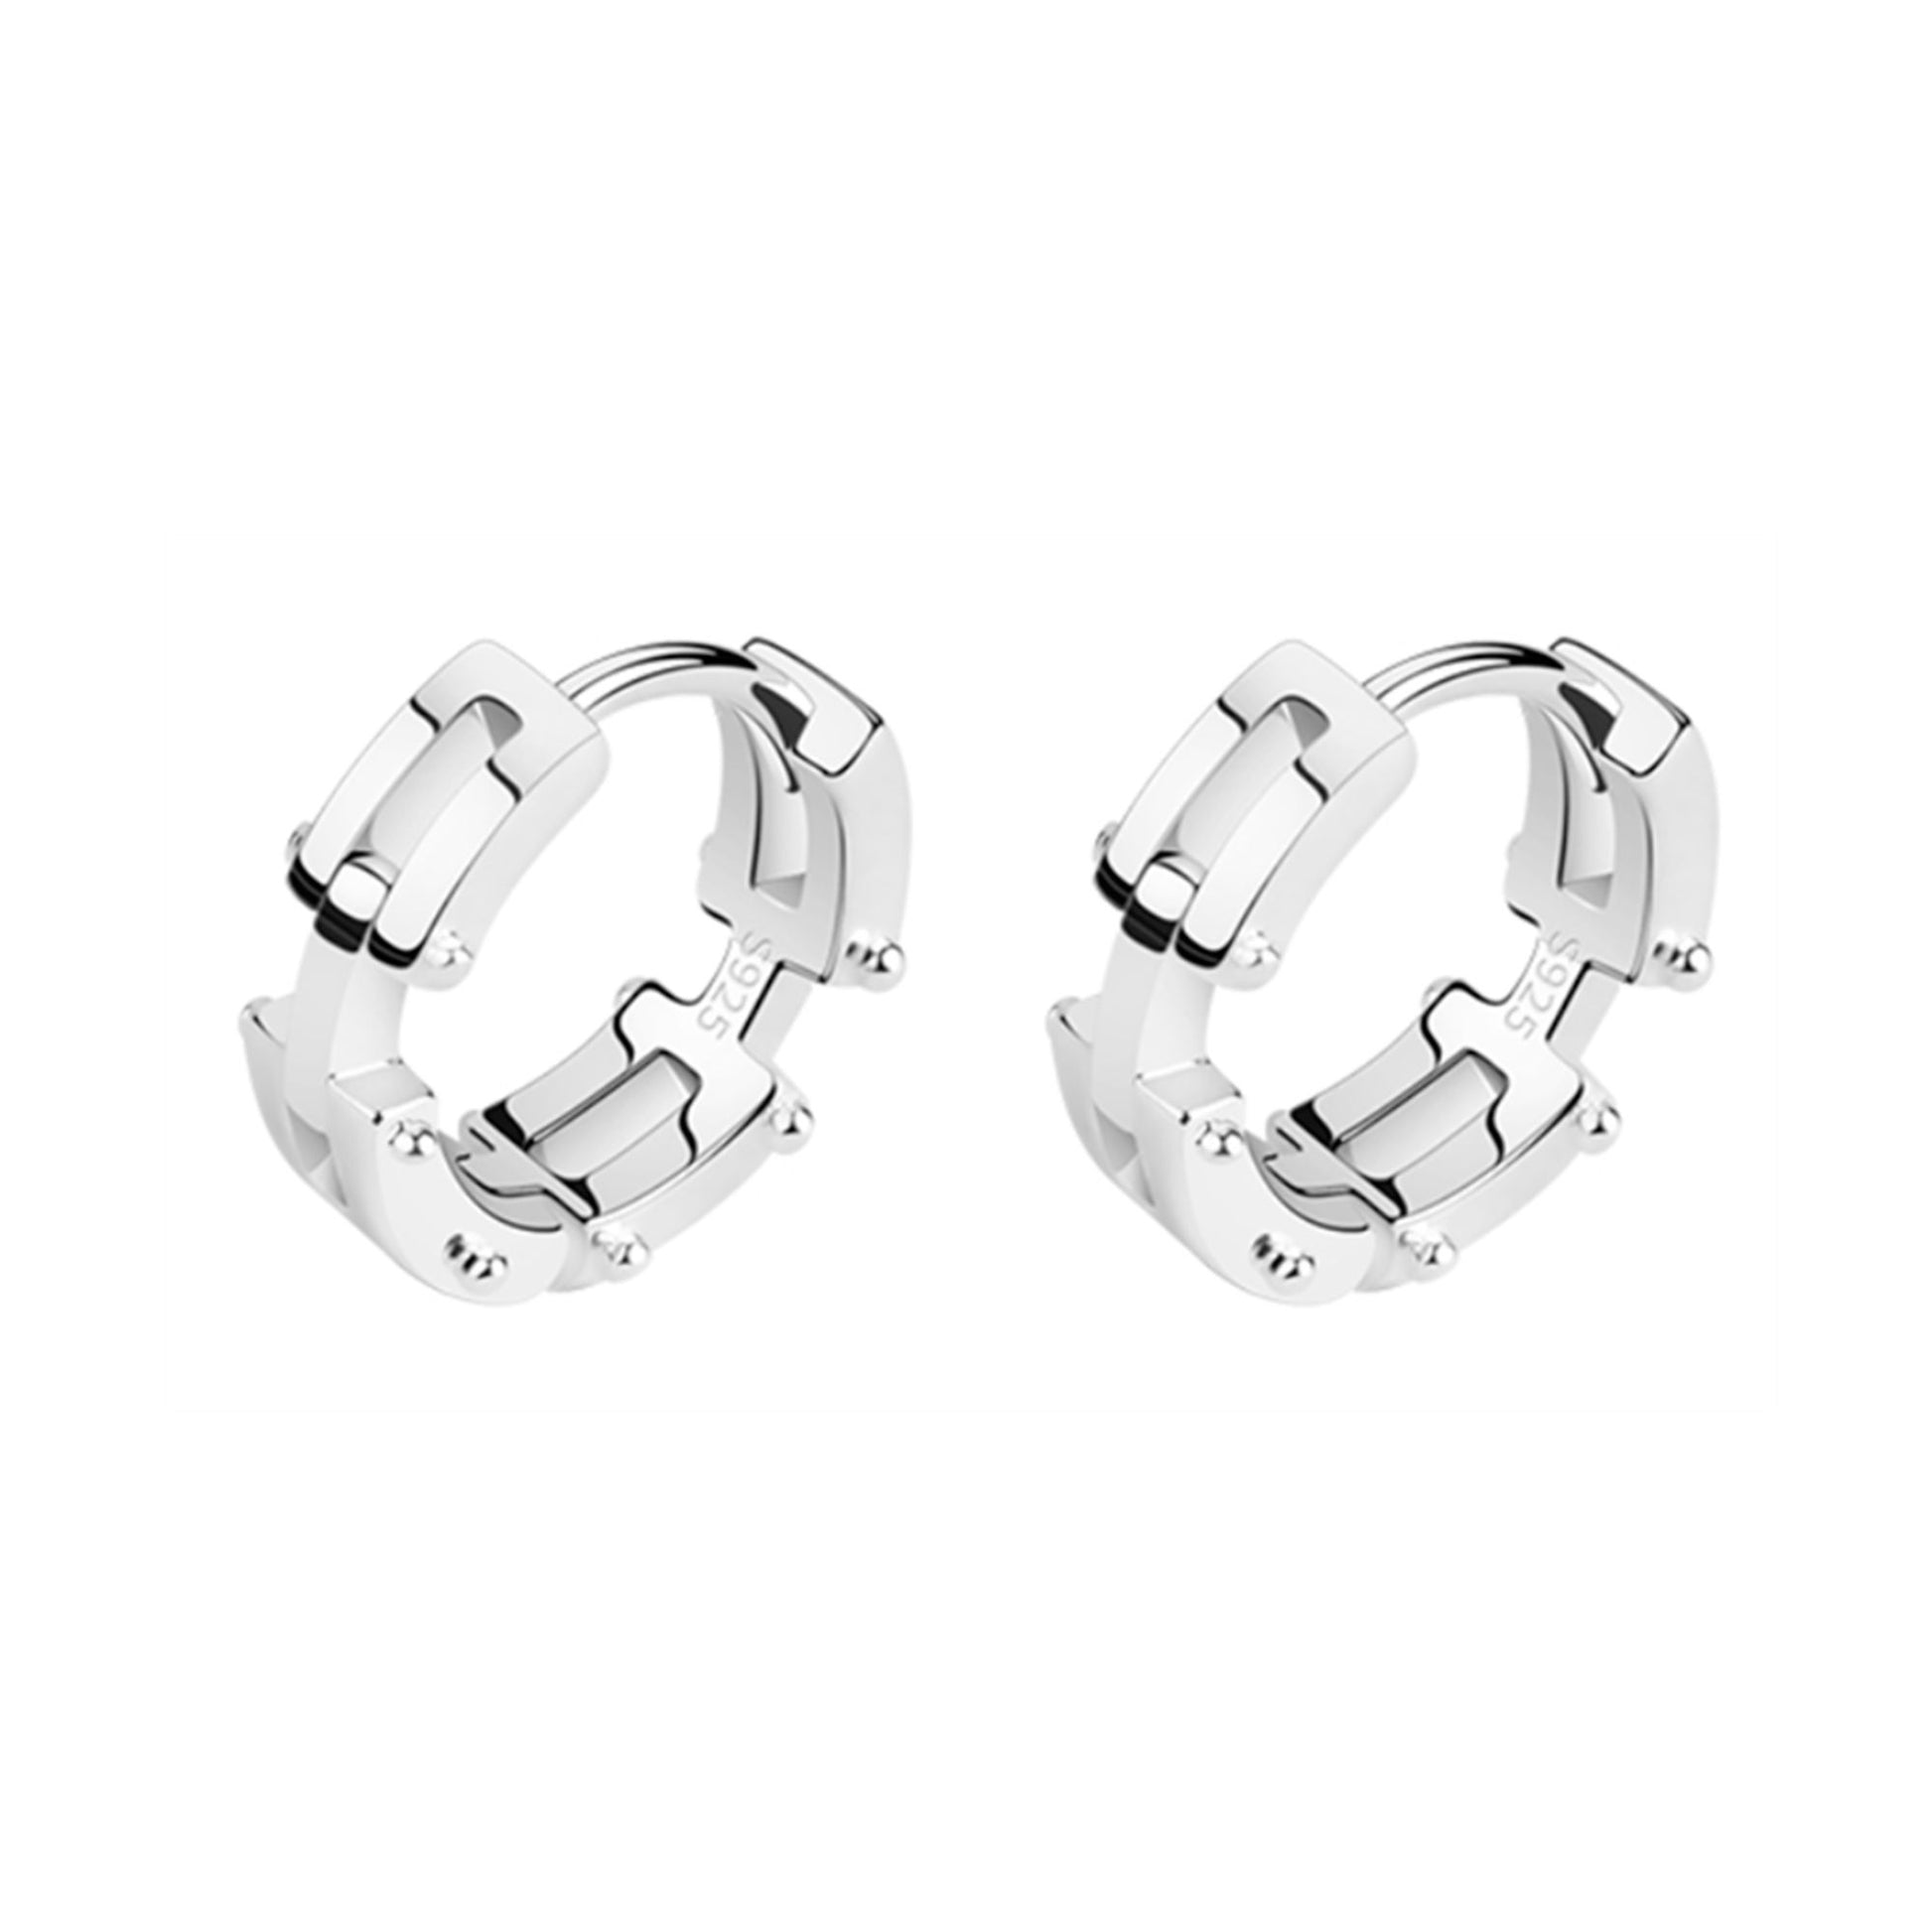 Men's and Women's Sleeper Hoop Earrings in Sterling Silver with Chain Link Design - sugarkittenlondon